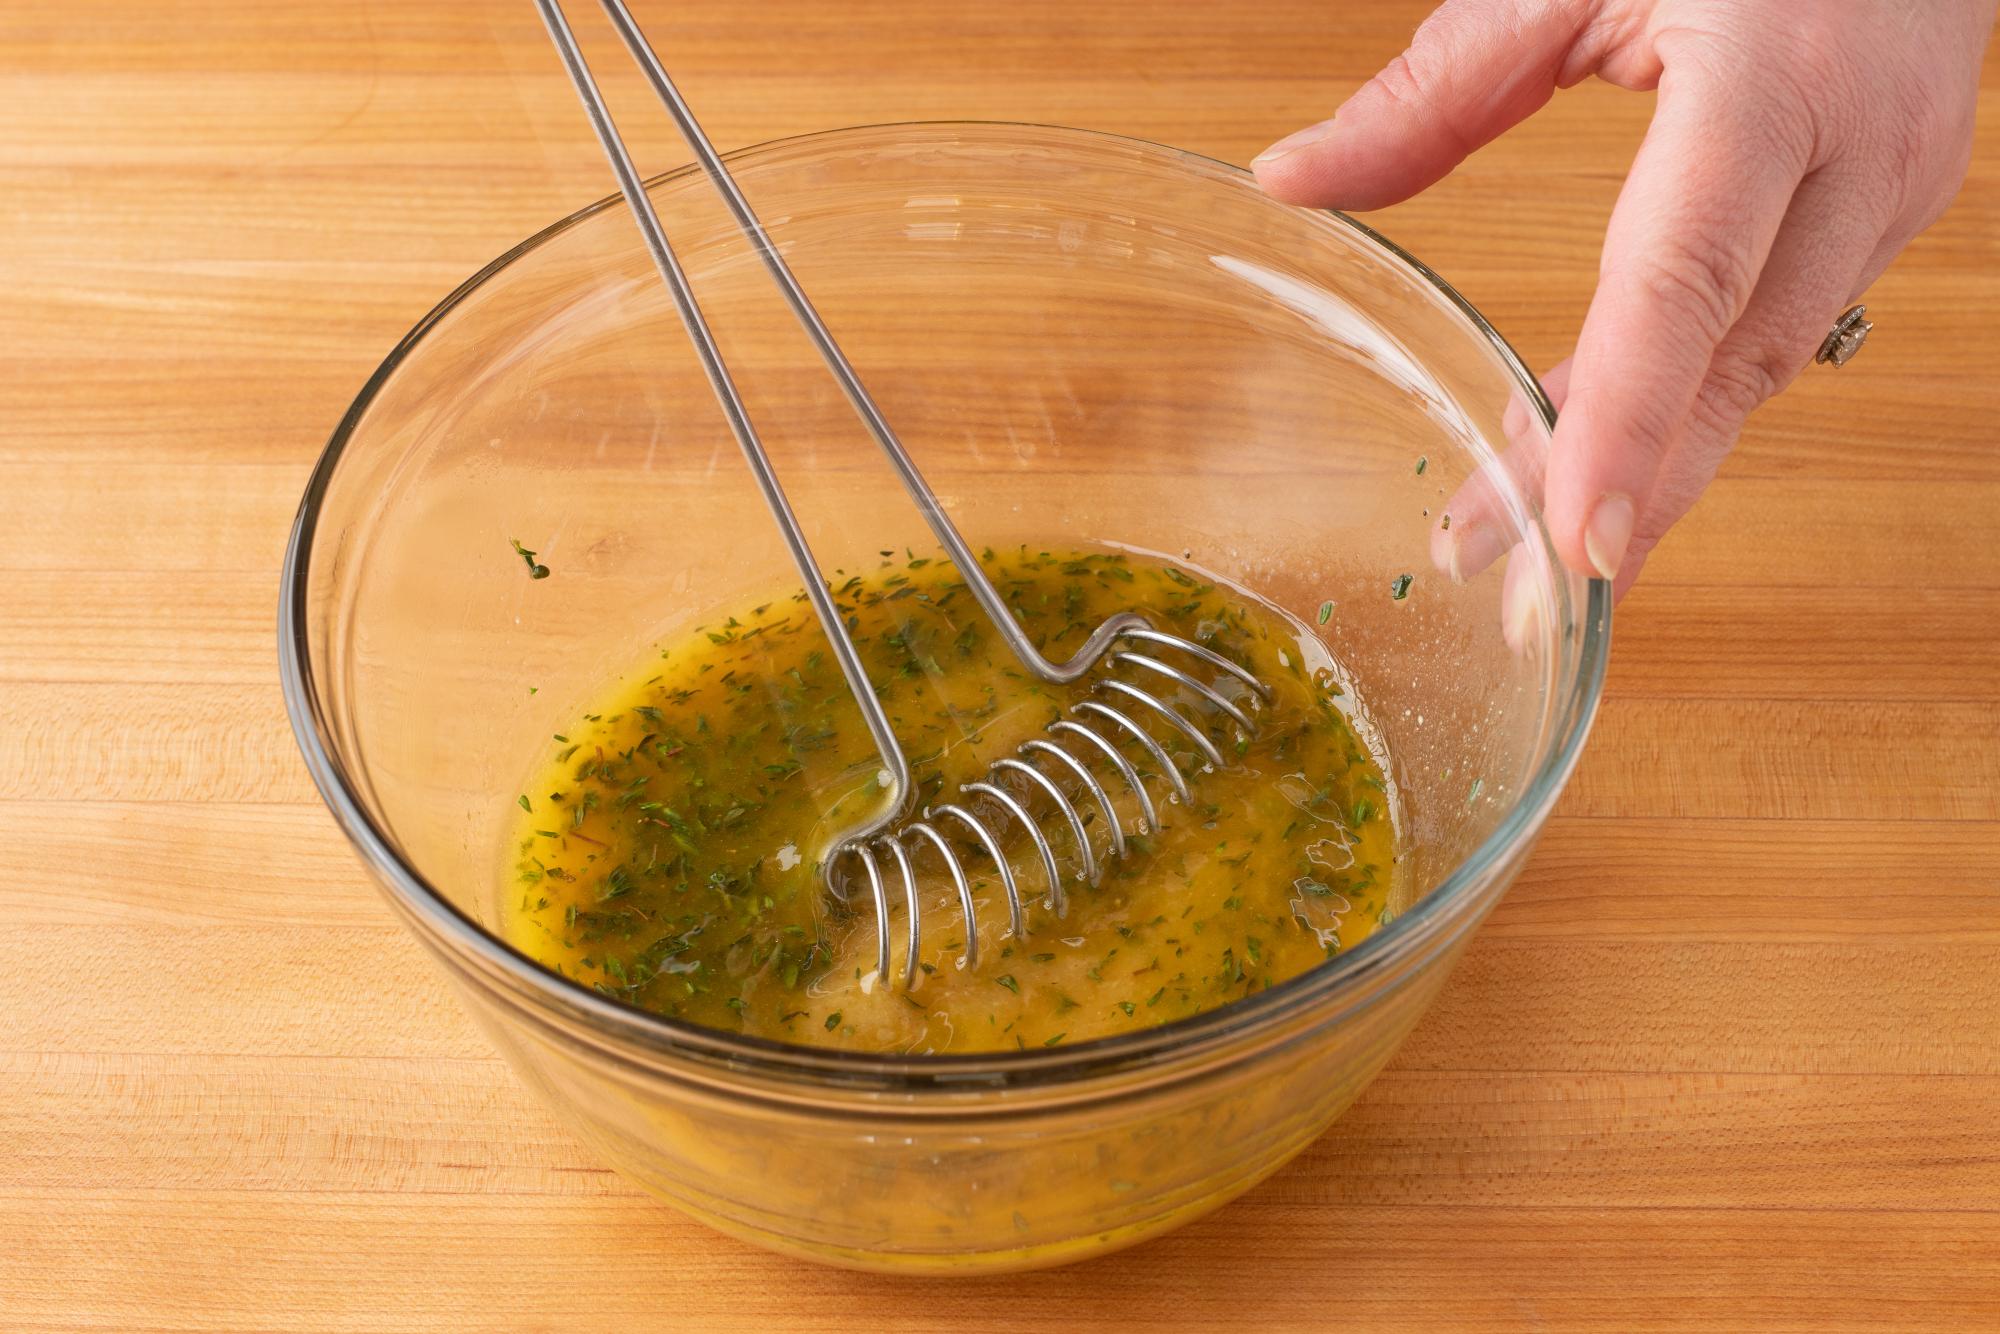 Use a Mix Stir to mix a vinaigrette.